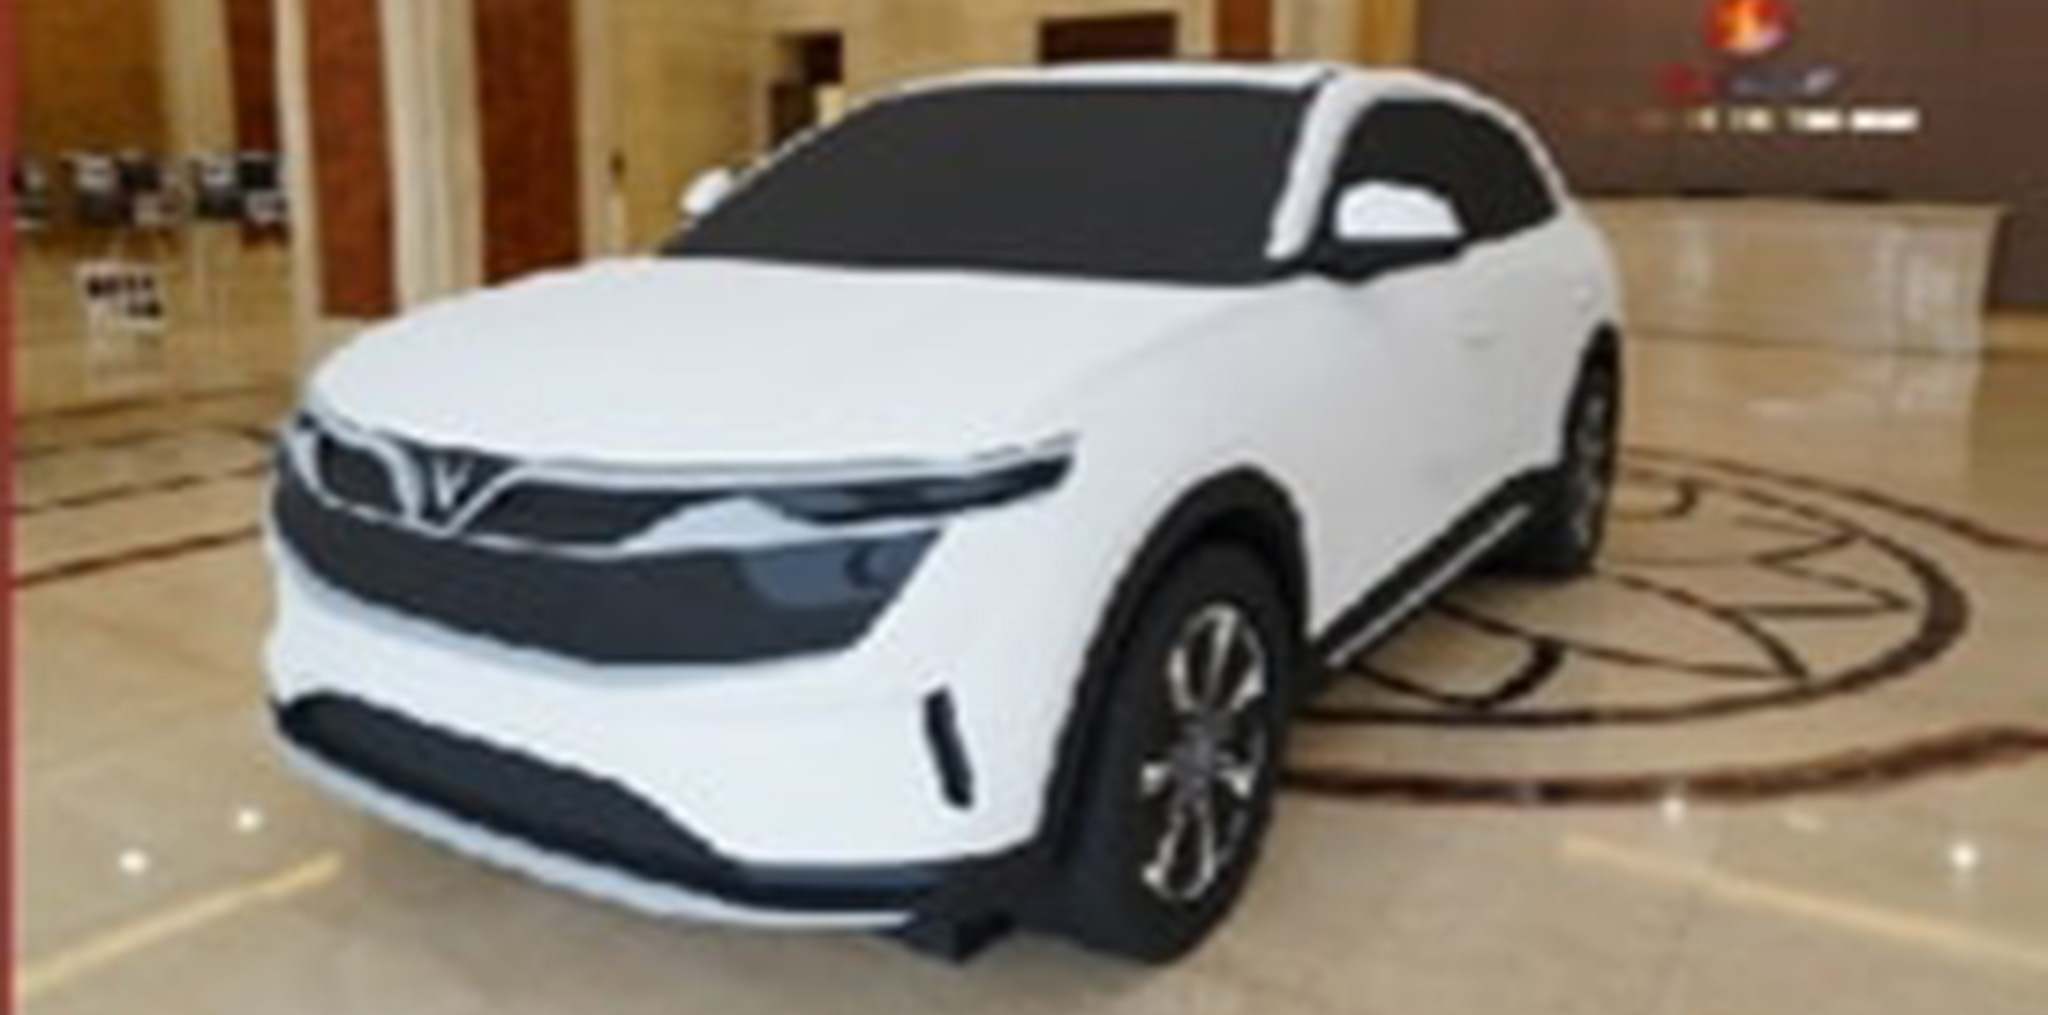 10 mẫu ô tô chỉ dành cho giới siêu giàu - Automotive - Thông tin, hình ảnh,  đánh giá xe ôtô, xe máy, xe điện | VnEconomy